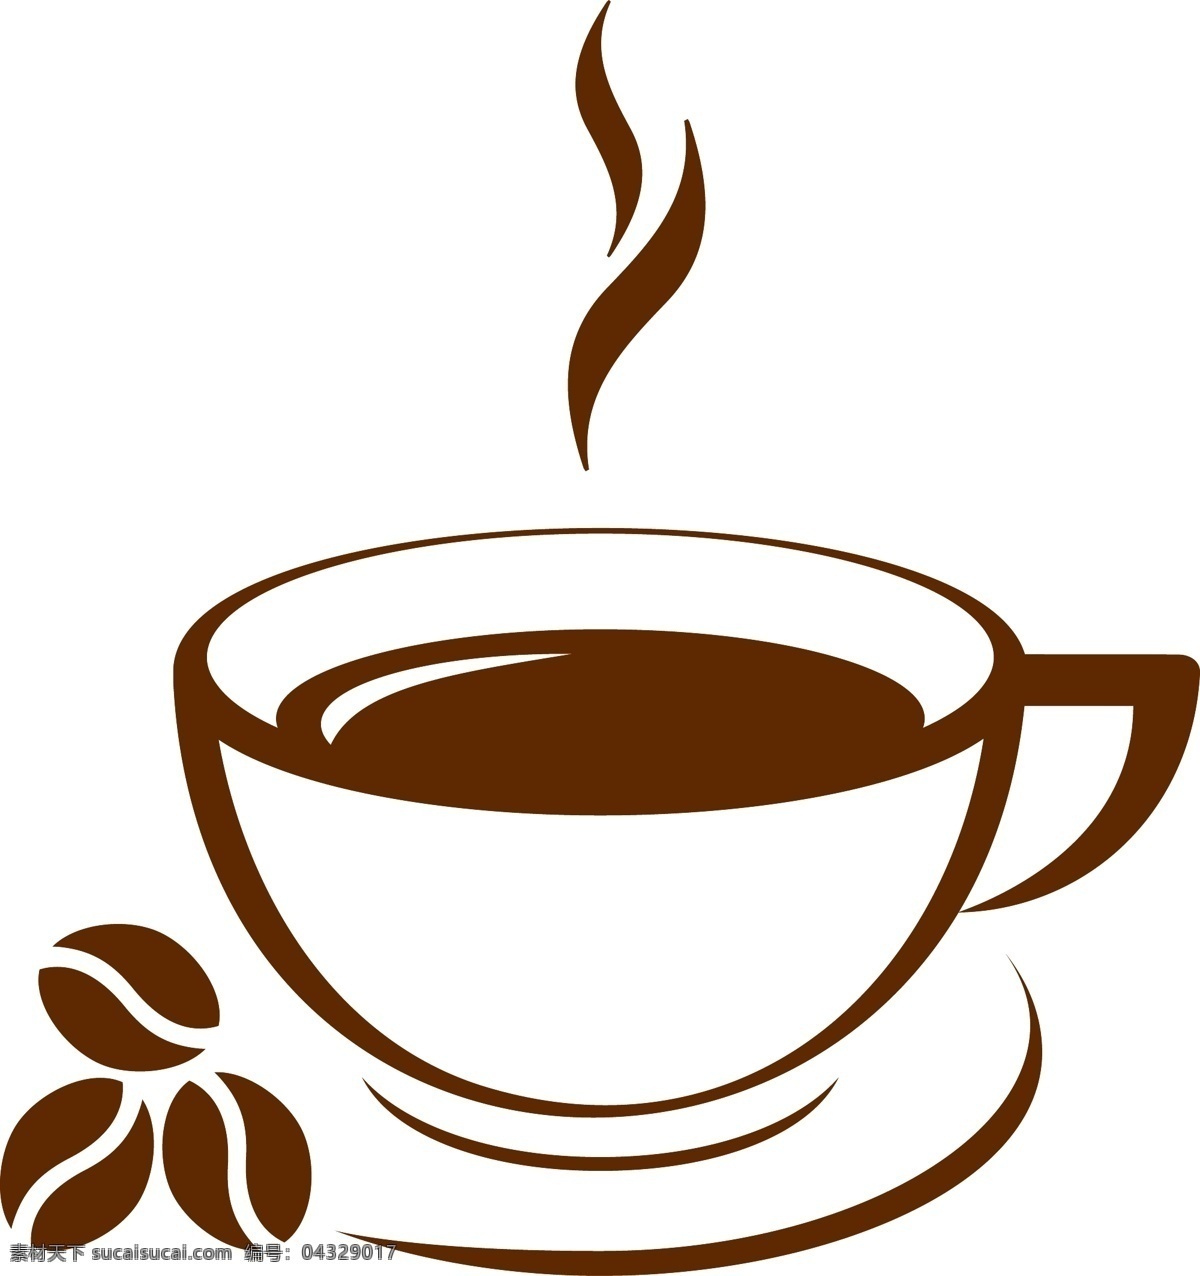 咖啡 咖啡杯 咖啡设计 咖啡手绘 coffee 咖啡图标 咖啡时间 咖啡豆 咖啡馆 咖啡标志 咖啡店 咖啡元素 咖啡店图标 logo 咖啡商标 餐饮美食 生活百科